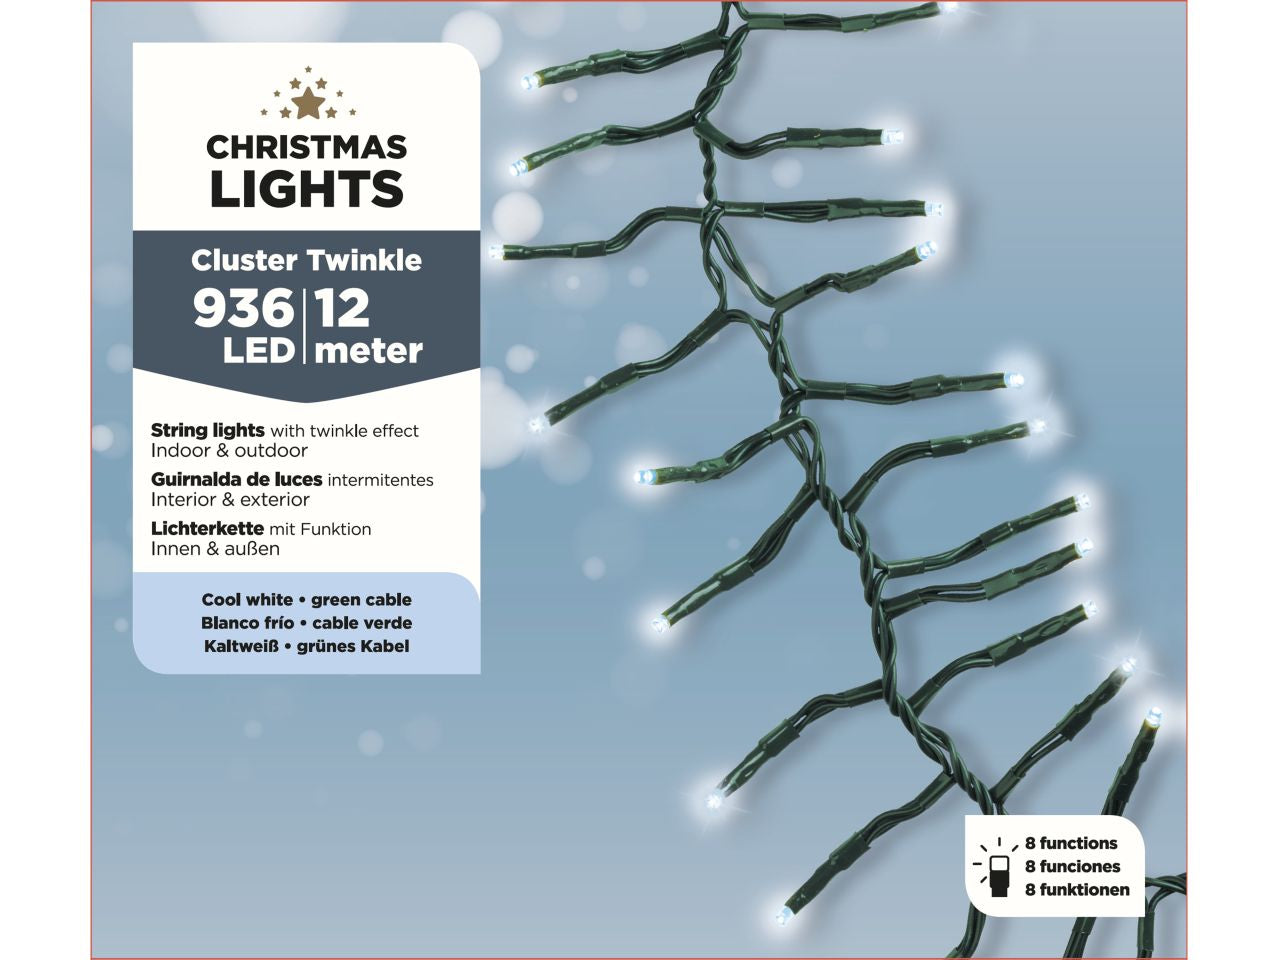 Luci natalizie led a grappolo con 8 funzioni effetto scintillio ad uso esterno colore verde bianco freddo misura lun.1200cm misura del led 3mm numero di led 936